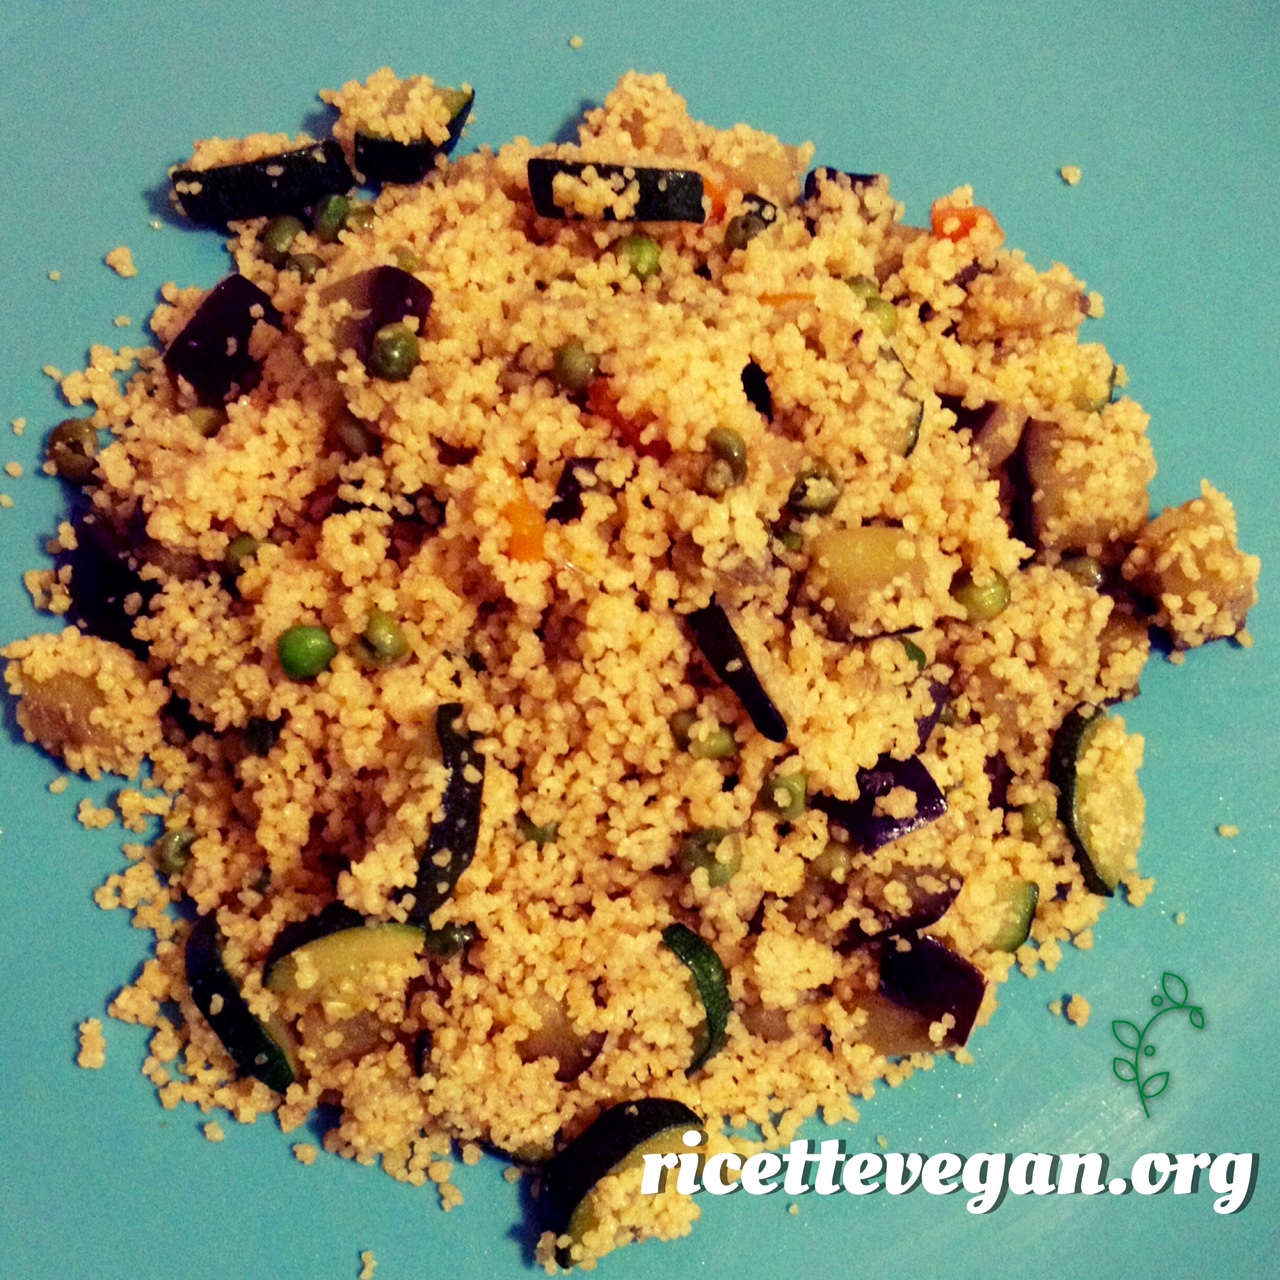 ricettevegan.org - cous cous verdure e curry